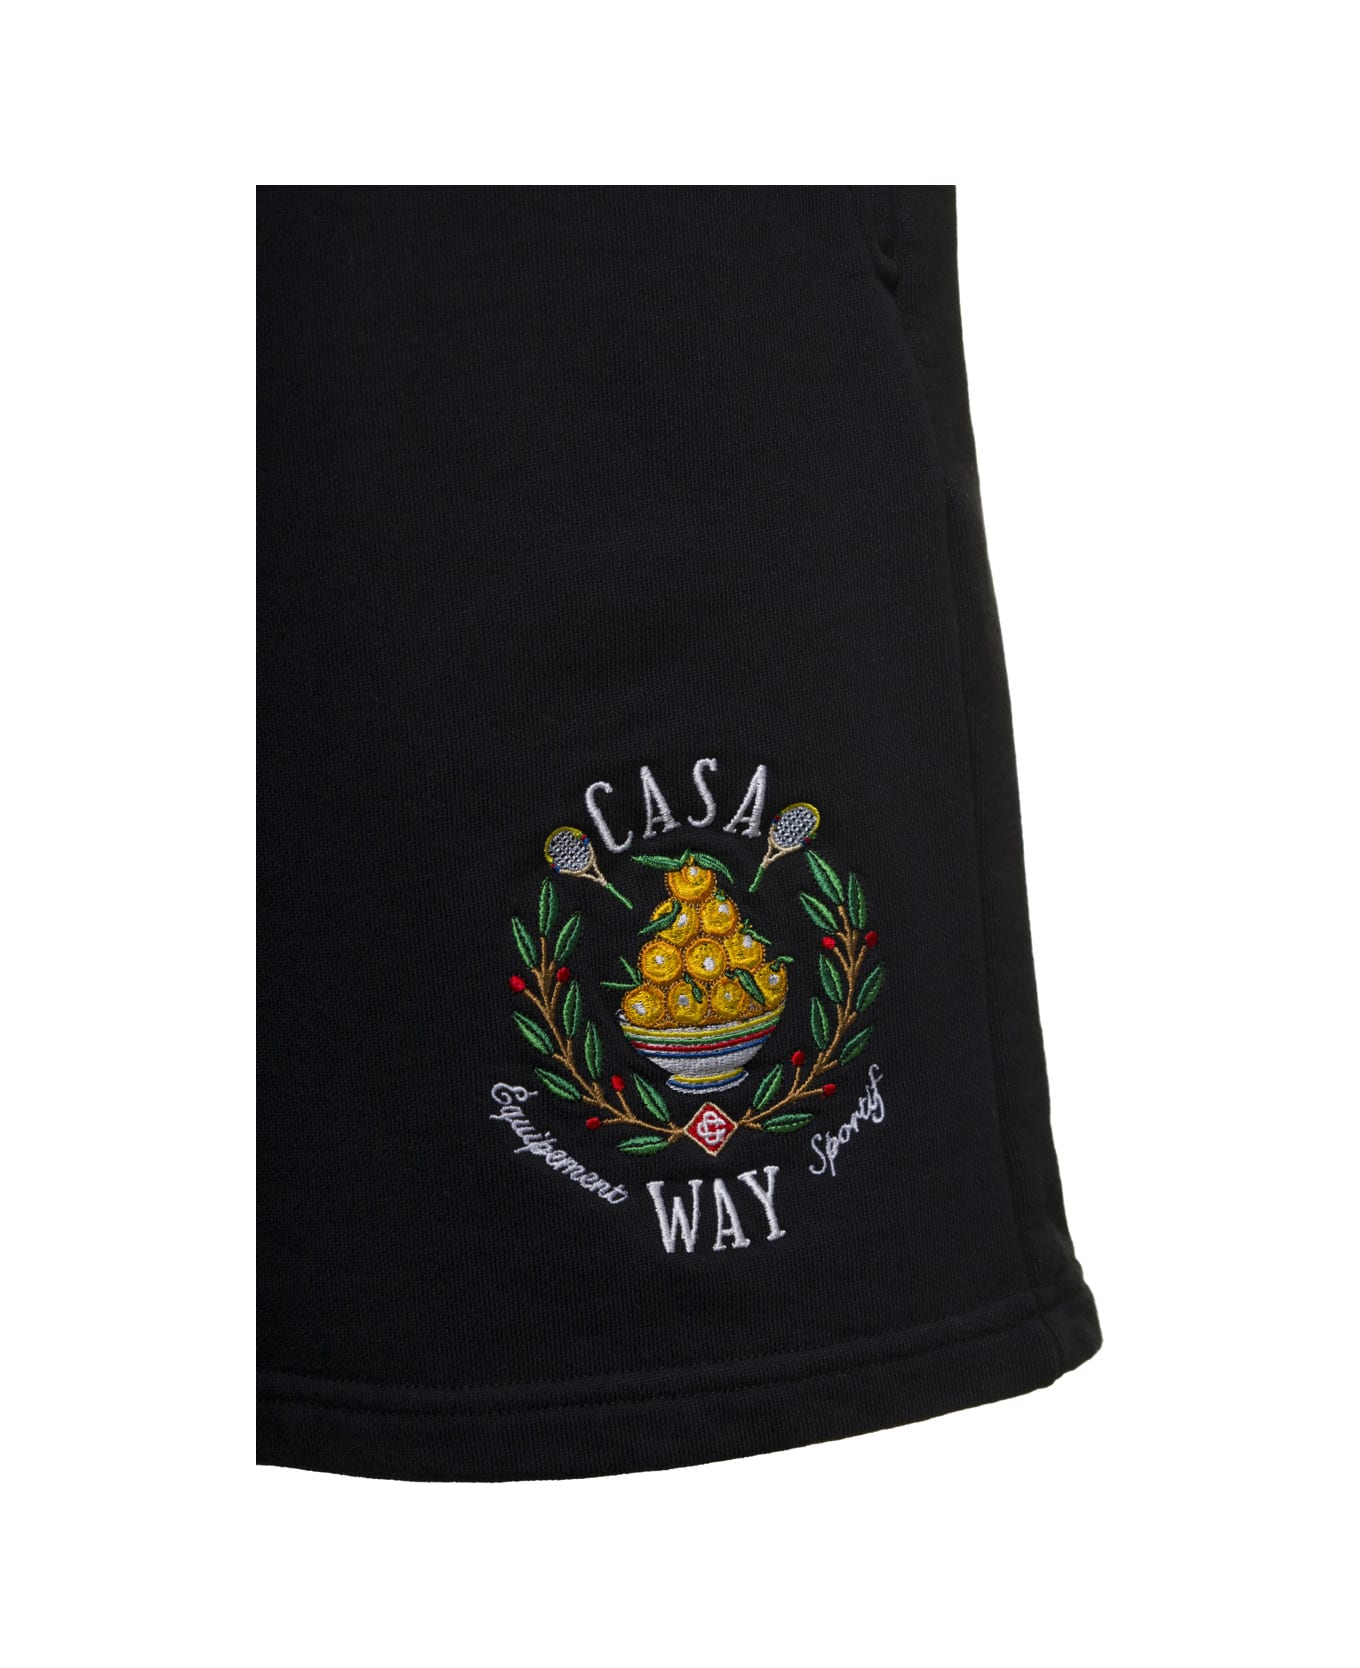 Casablanca Casa Way Embroidered Sweatshort - Black